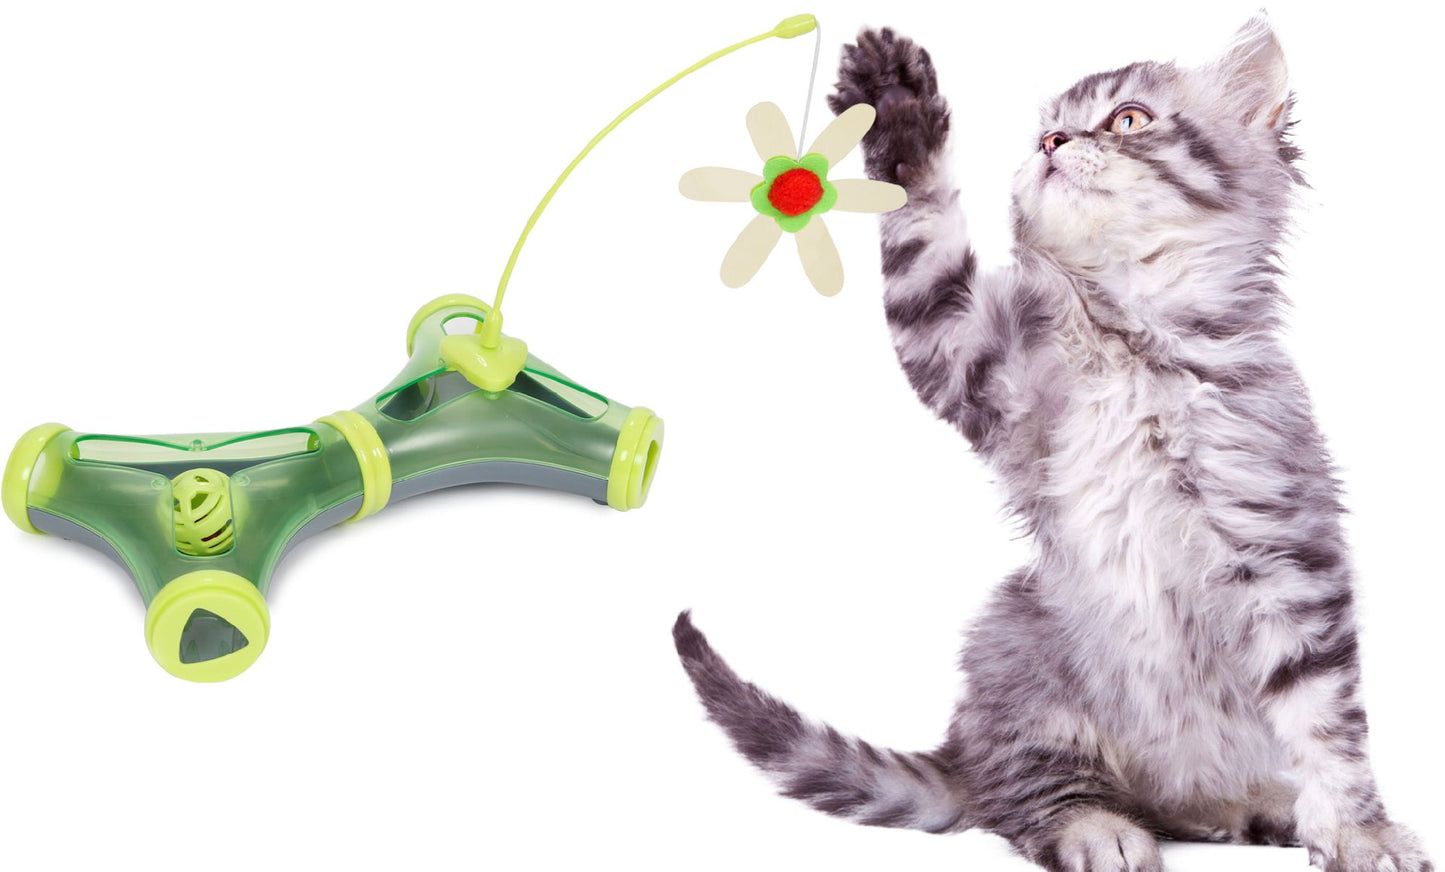 Pet Life Kitty-Tease Interactive